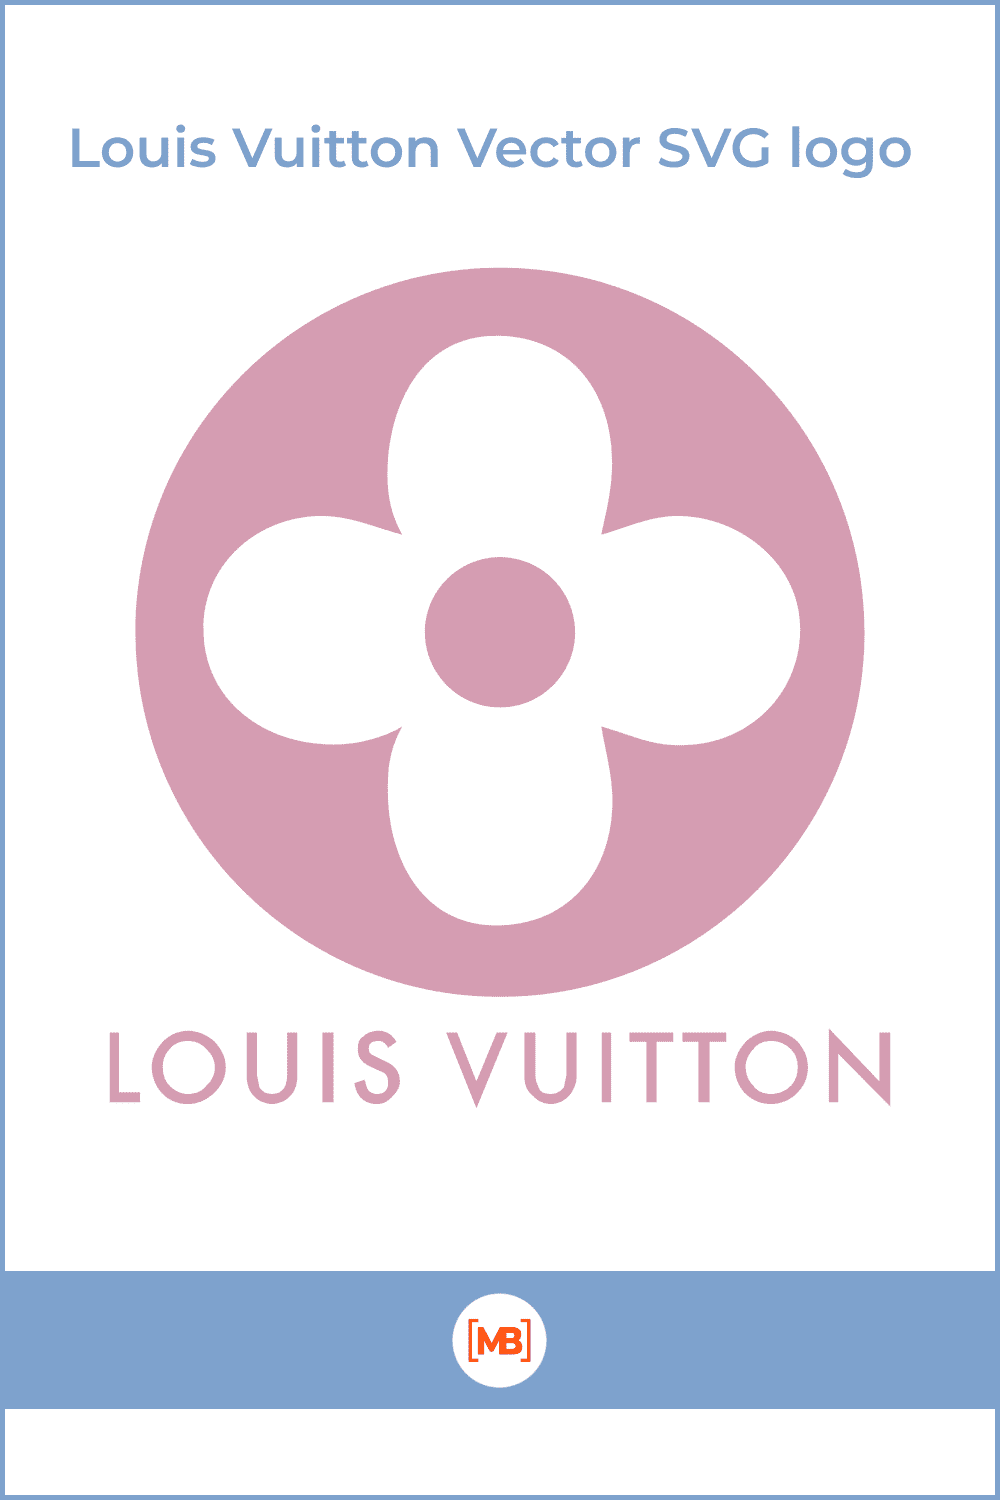 Louis Vuitton Vector SVG logo.